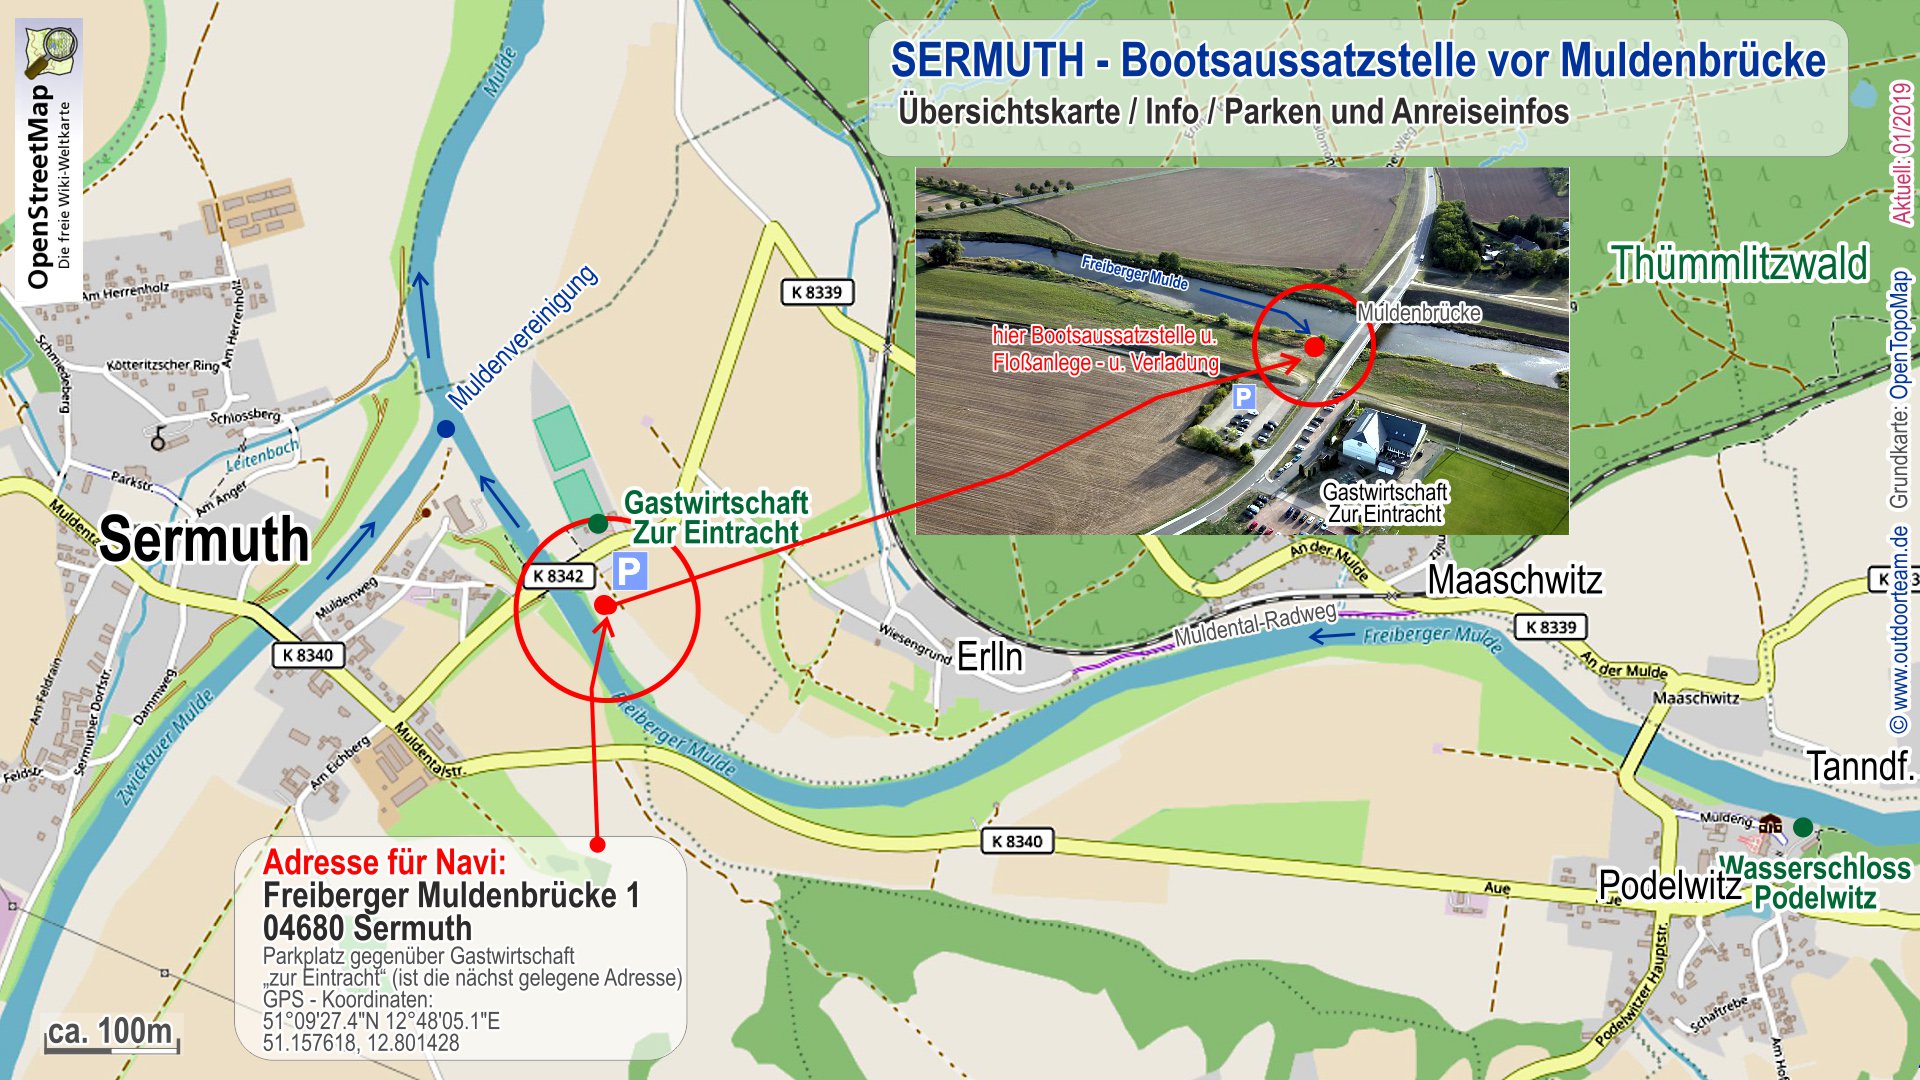 Detailkarte Sermuth nahe der Muldenvereinigung - Koordinaten und Detailplan der Bootsanlegestelle unweit der Gastwirtschaft Zur Eintracht.